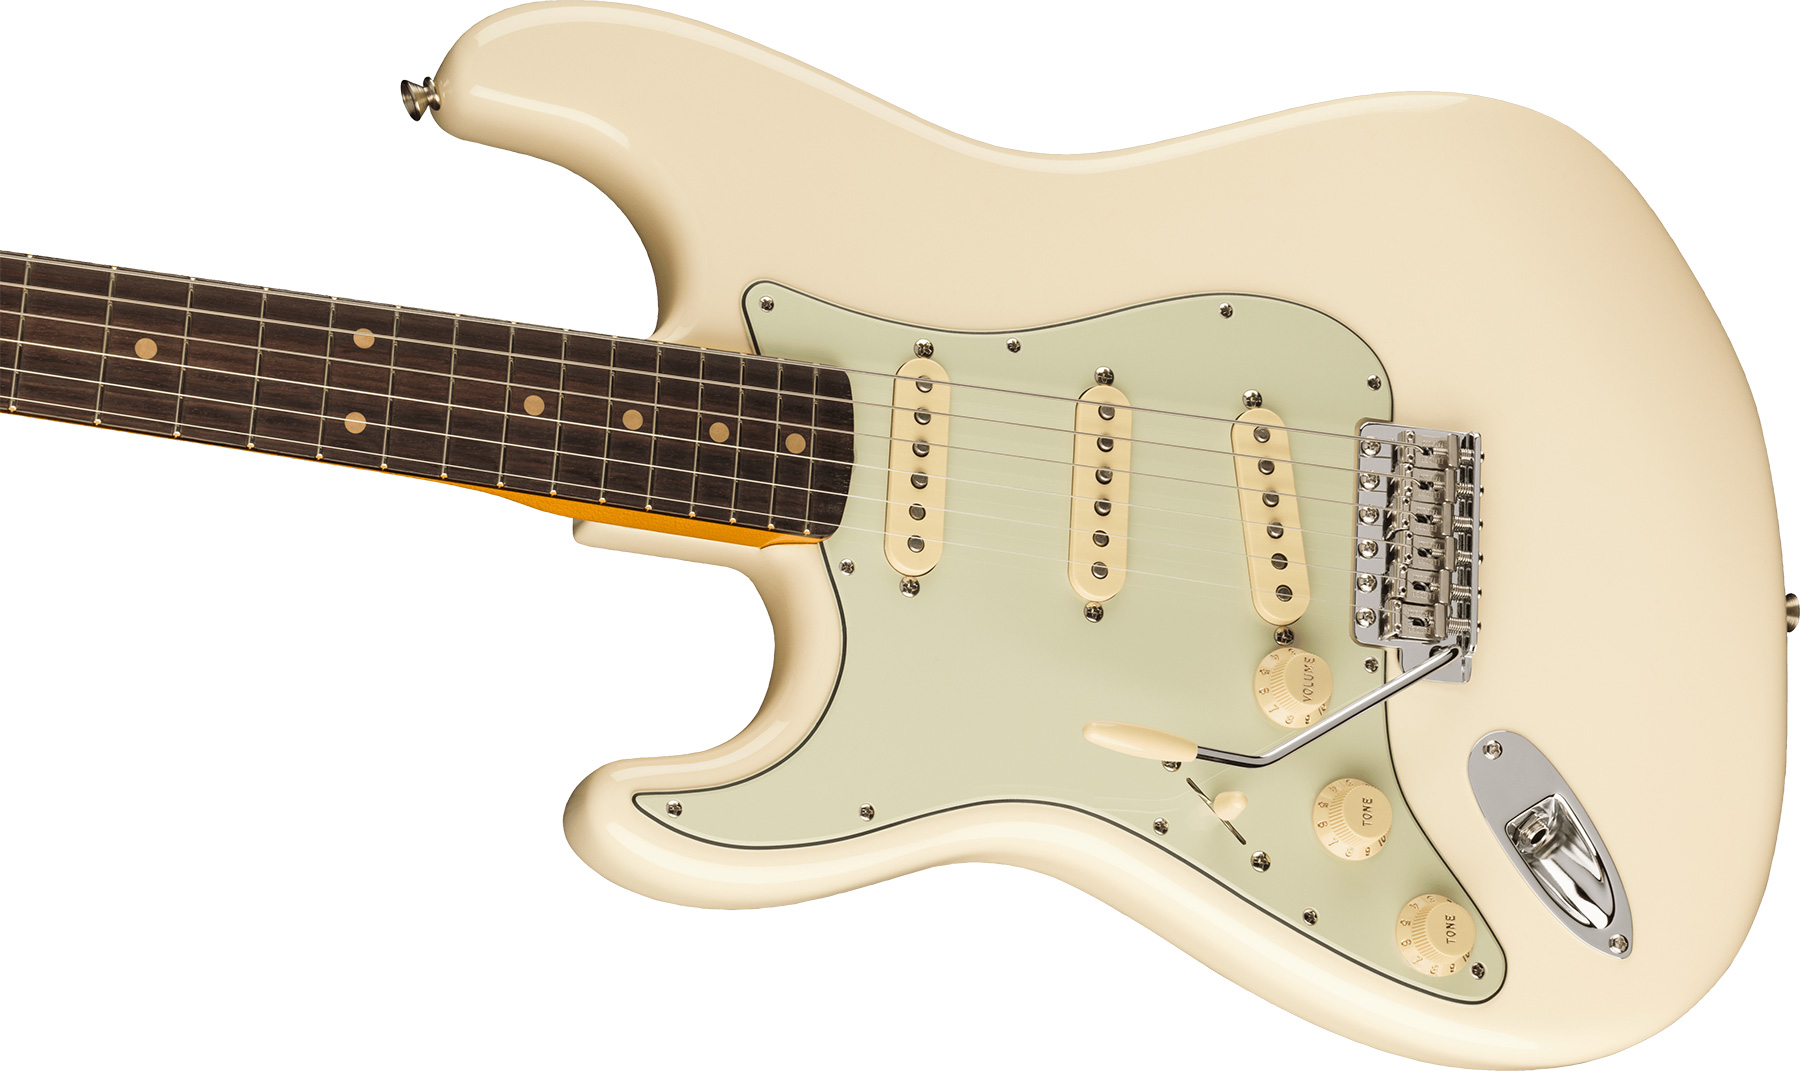 Fender Strat 1961 American Vintage Ii Lh Gaucher Usa 3s Trem Rw - Olympic White - Linkshandige elektrische gitaar - Variation 2